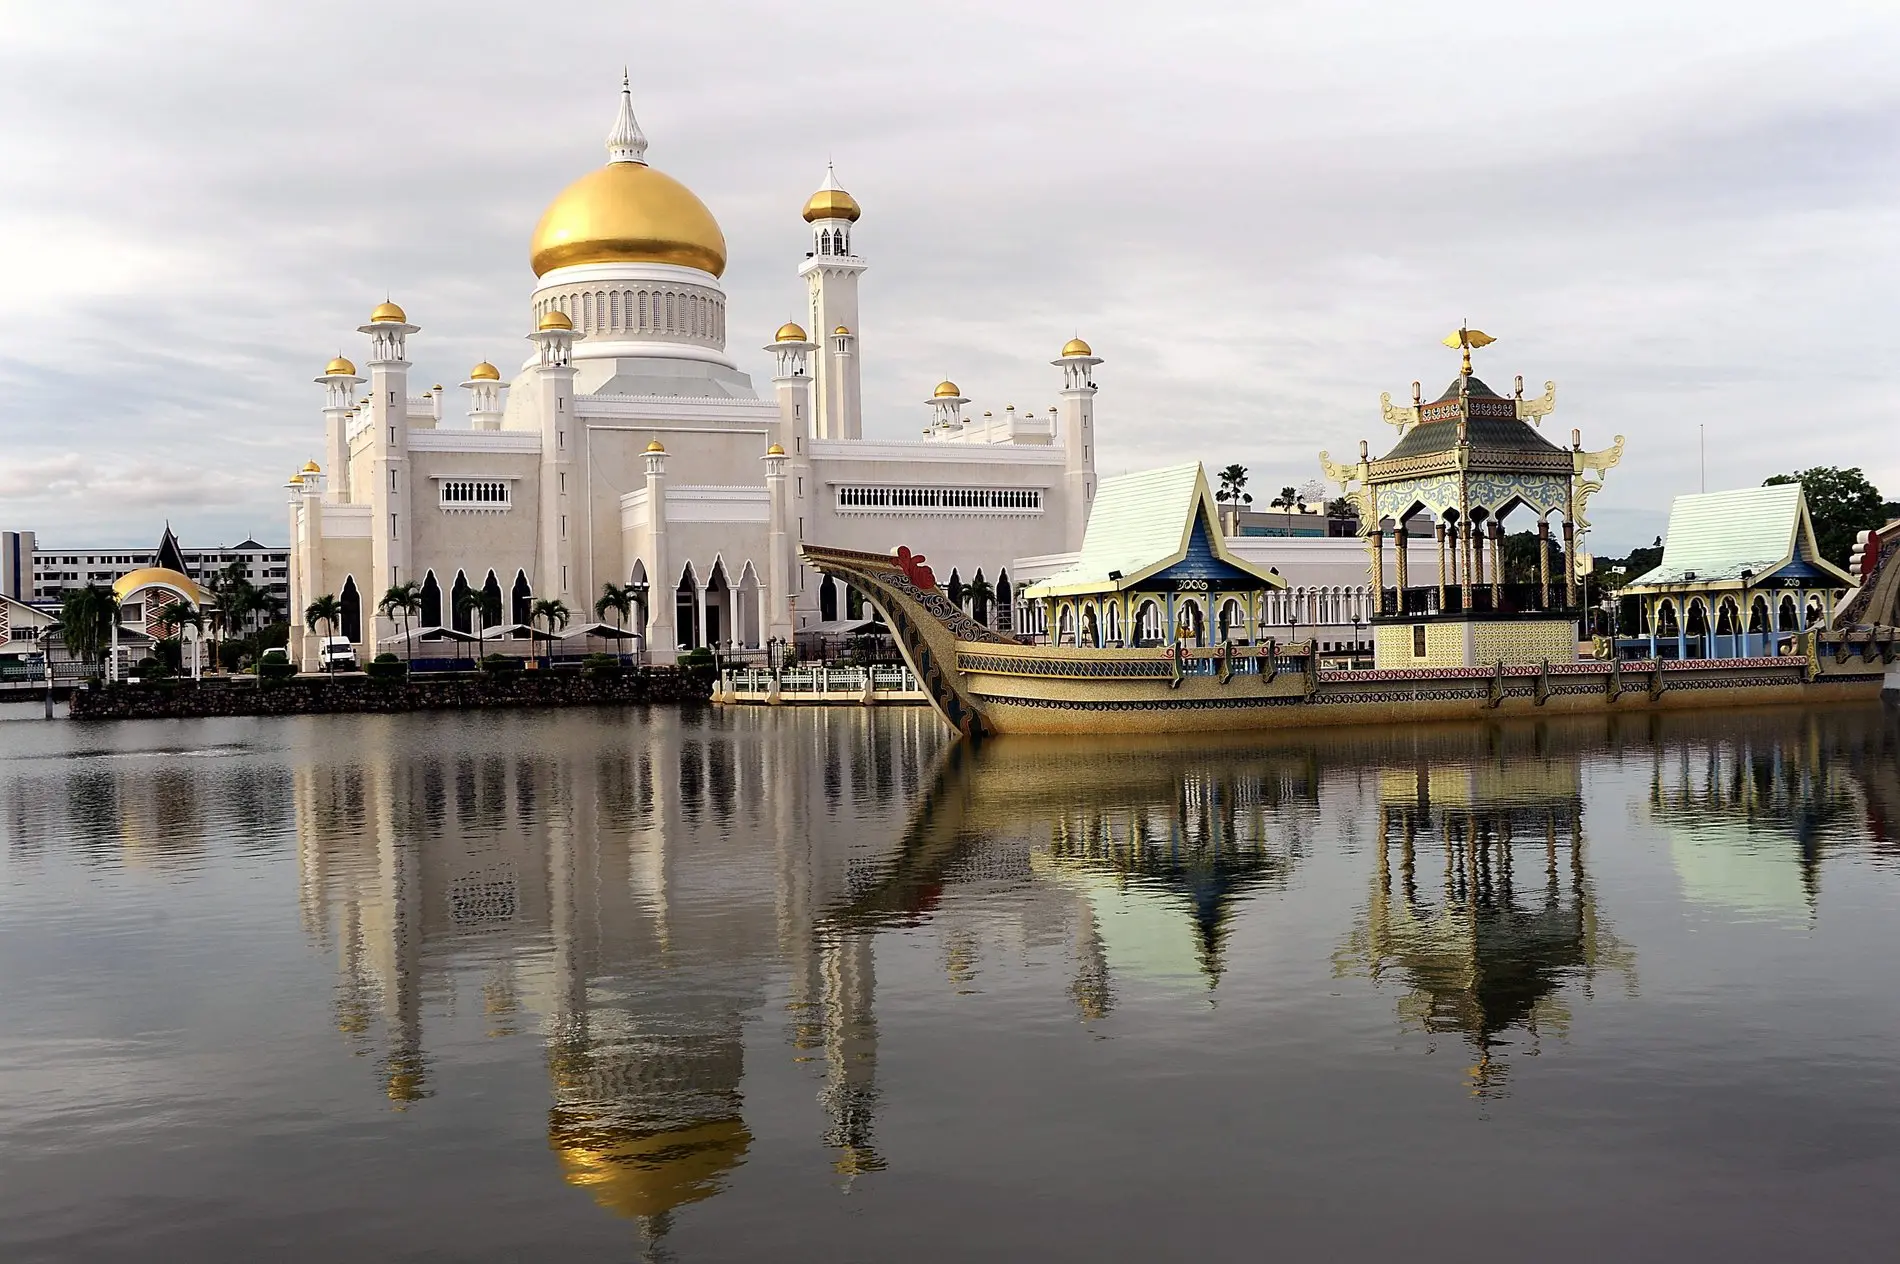 Sultan Omar Ali Saifuddien Moschee, Spiegelung im Wasser